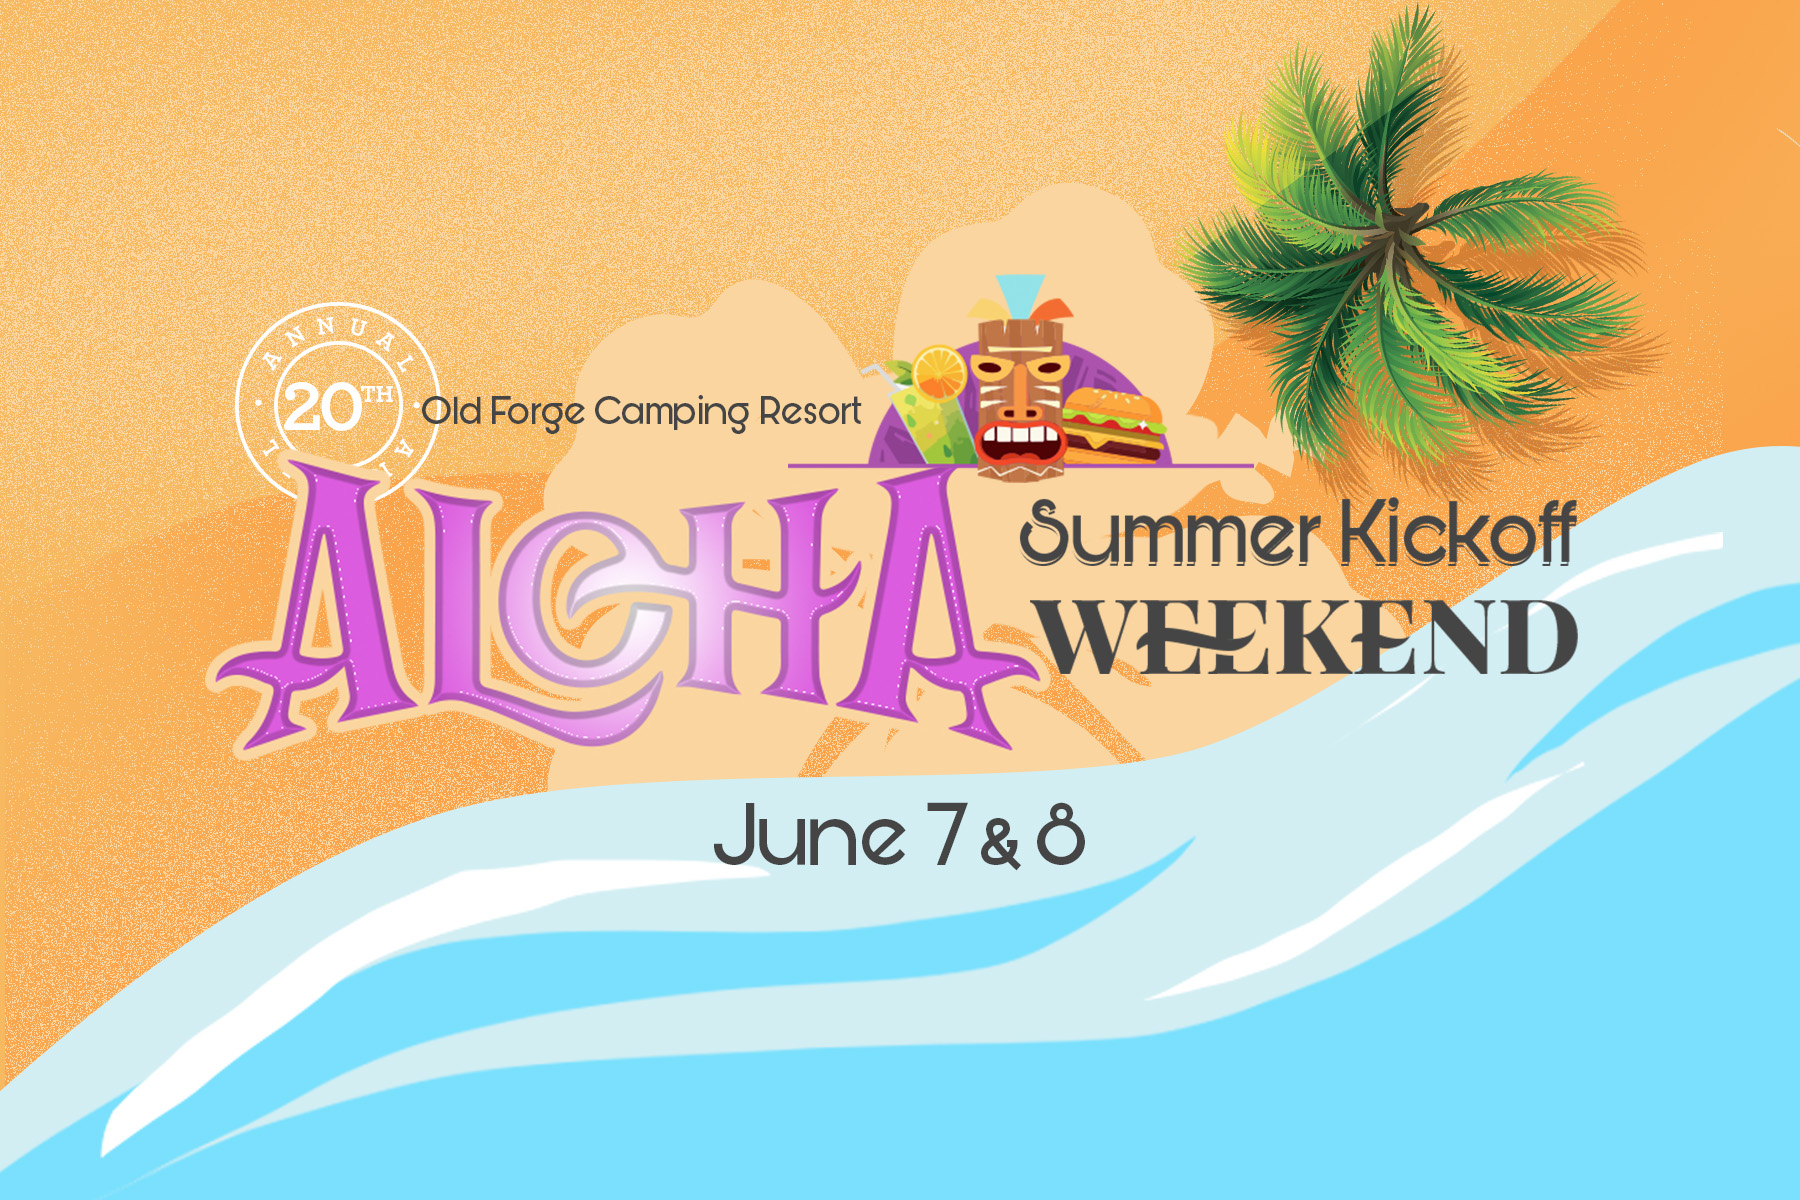 Aloha Summer Kickoff Weekend!